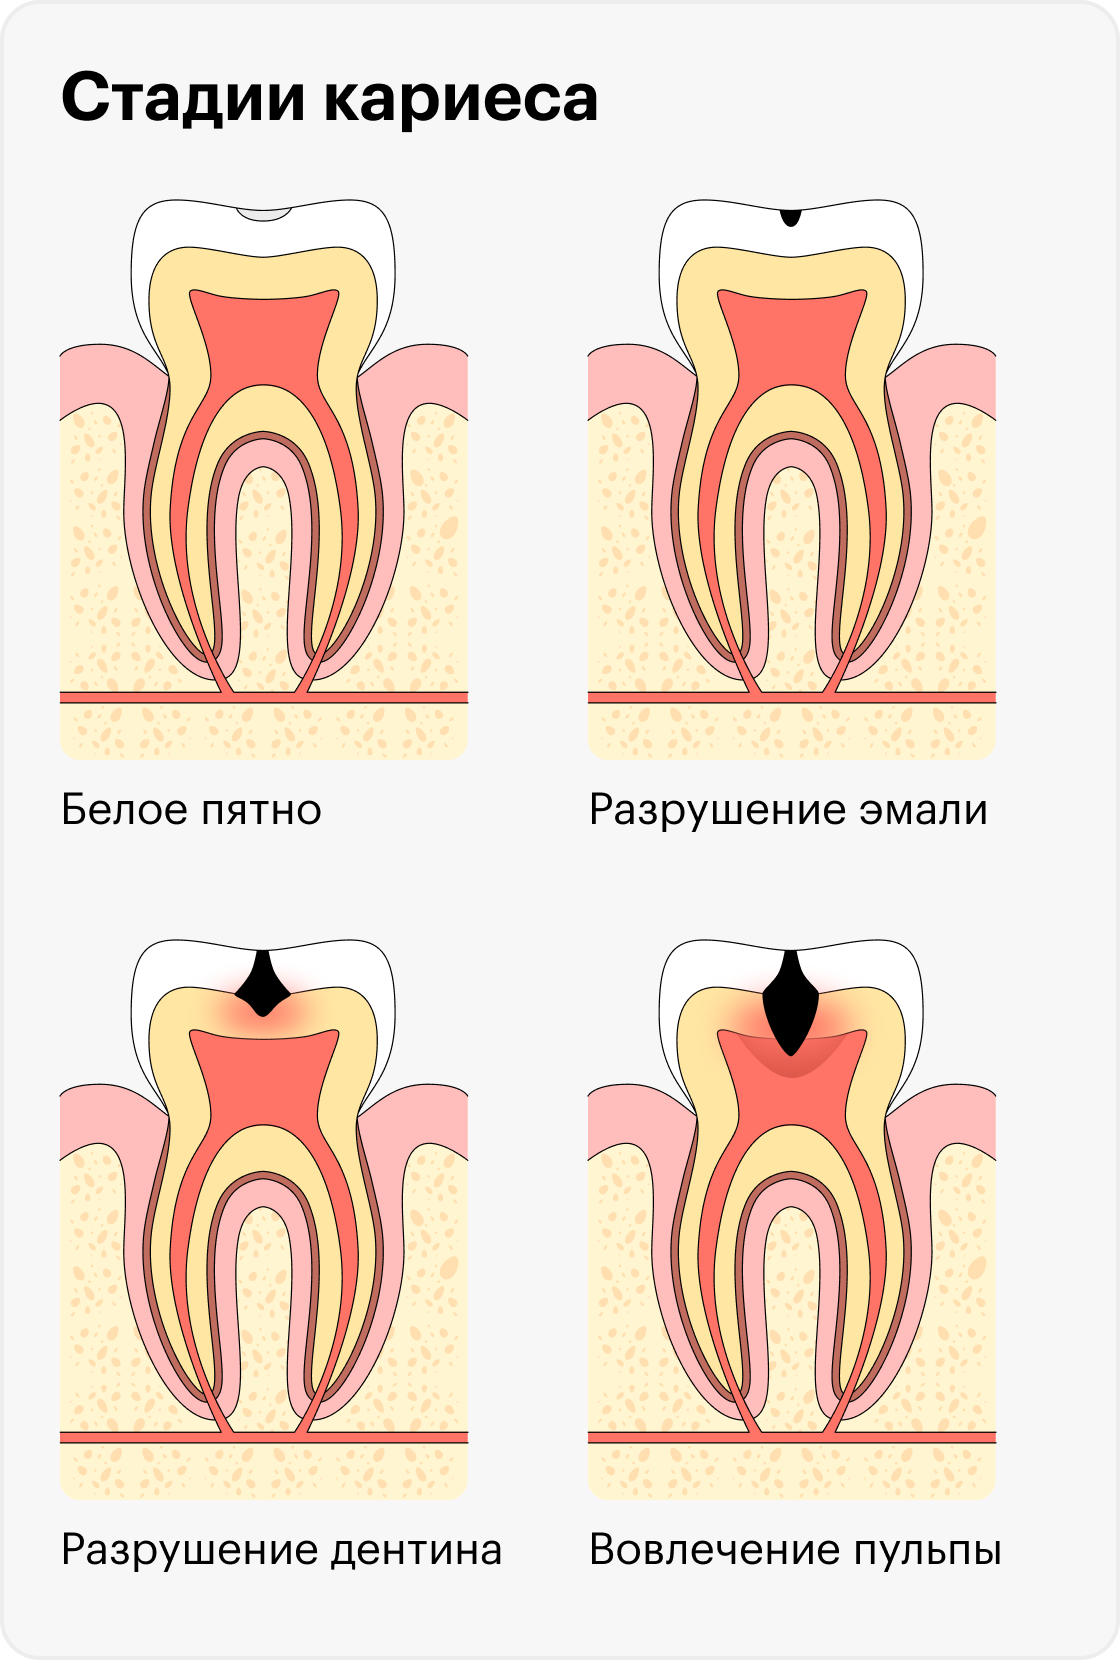 Разрушение зуба при&nbsp;кариесе начинается с крохотного белого пятнышка на эмали и заканчивается пульпитом